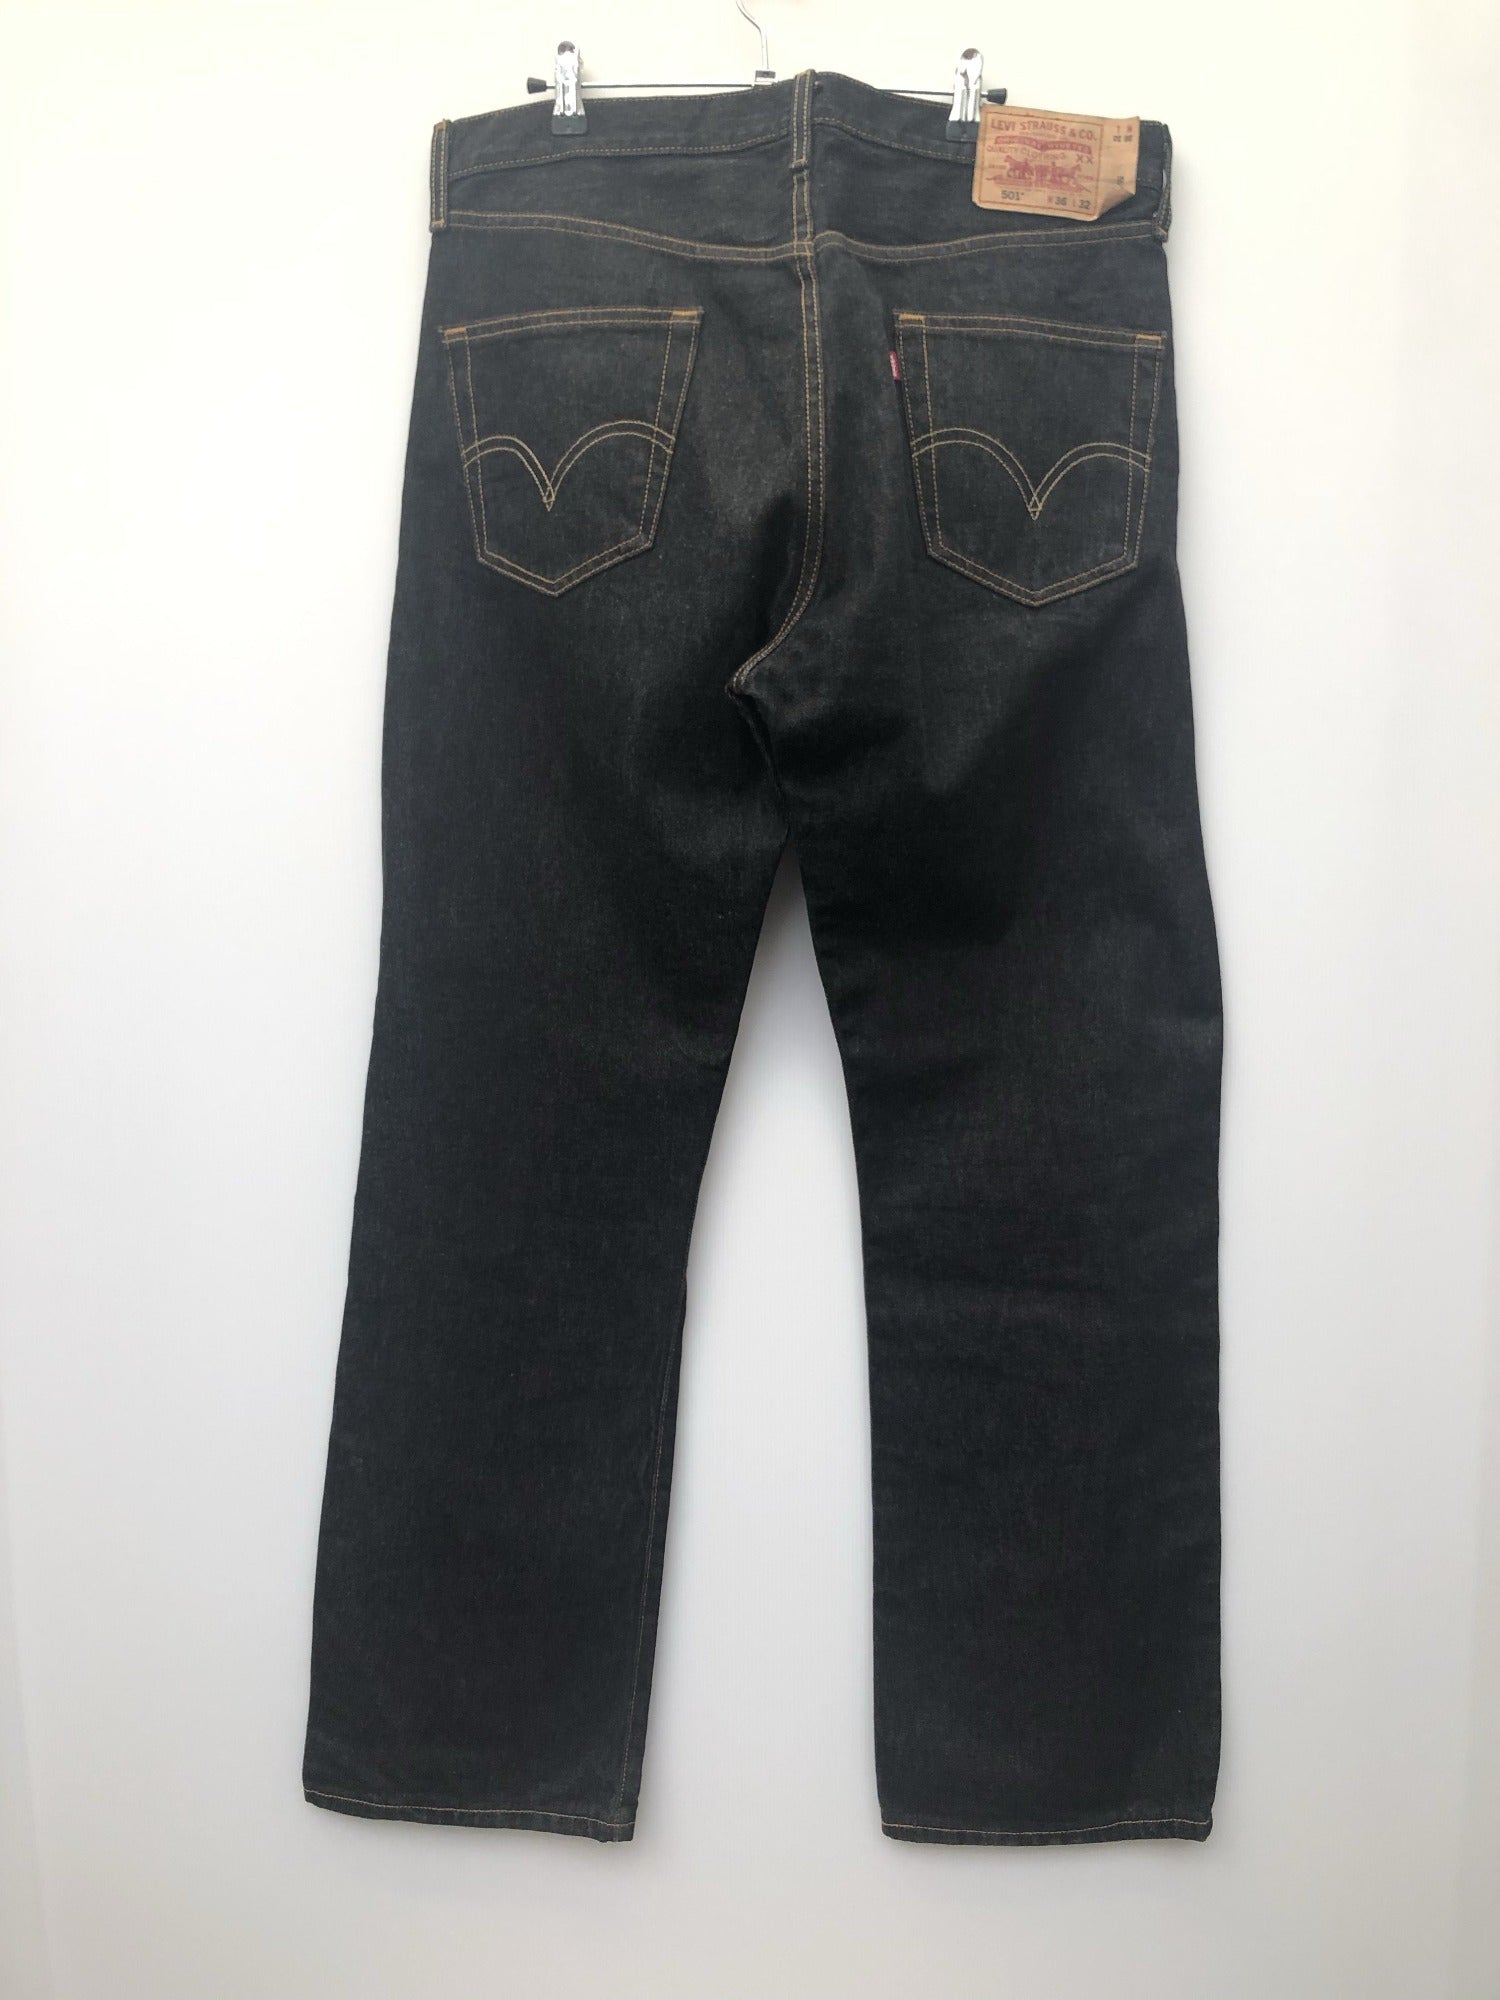 Original Levi Strauss 501 XX Jeans Red Tab - Size W36 L32 - Mens ...